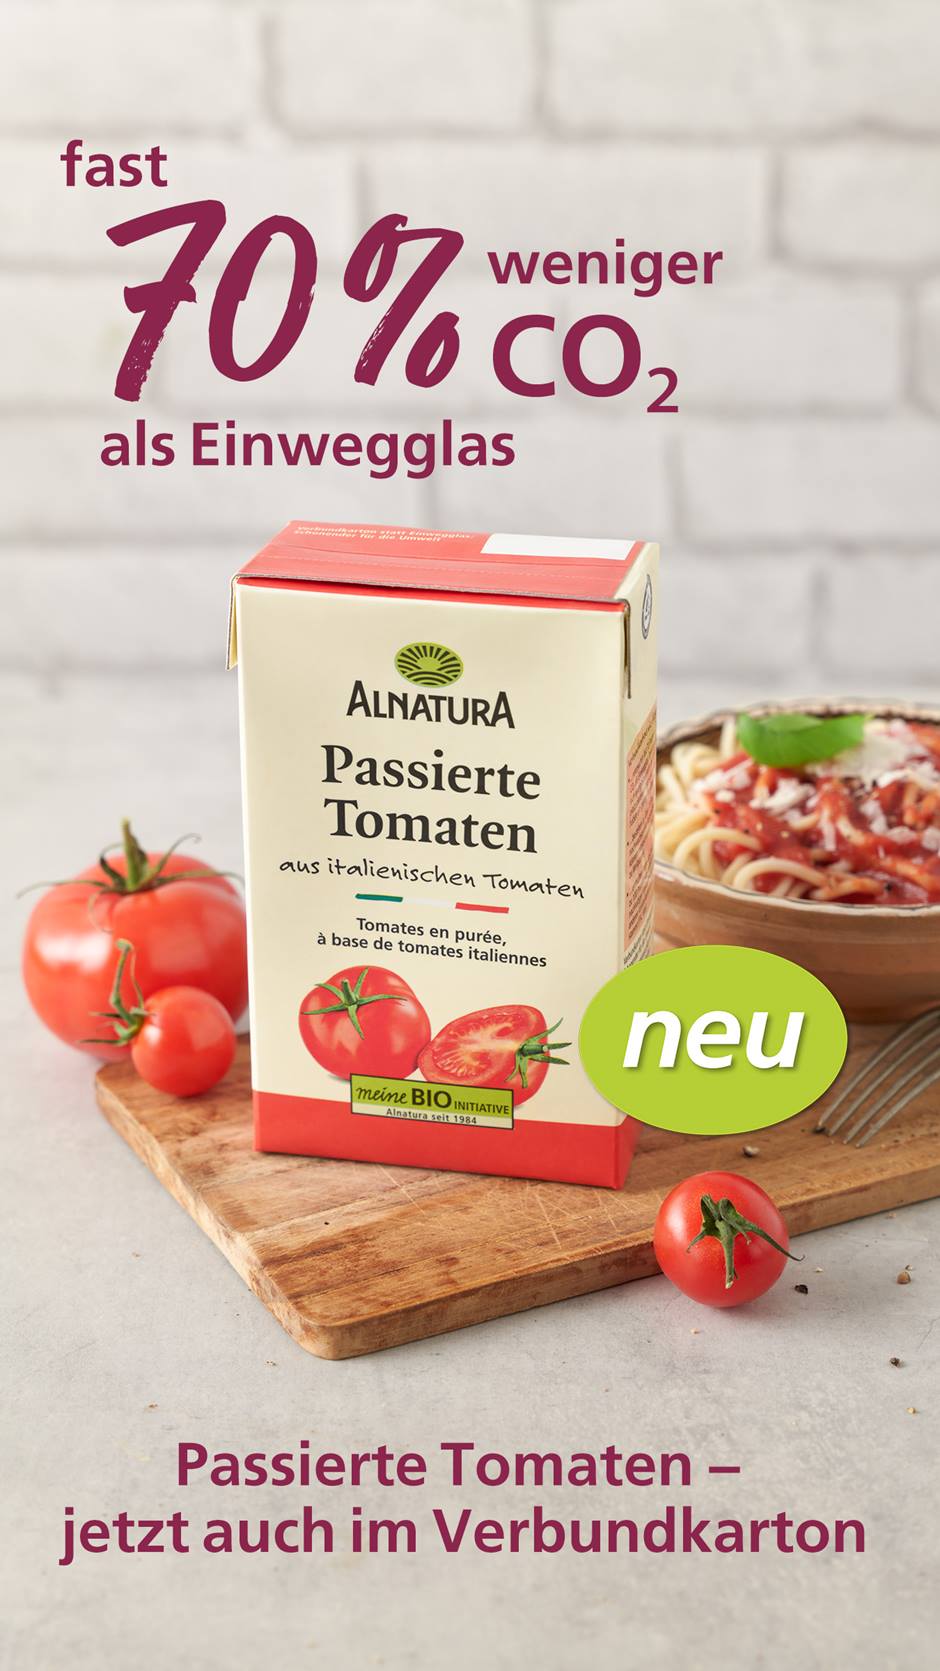 Alnatura Verpackung von Passierte Tomaten im Verbundkarton mit Text "fast 70 %weniger CO2 als Einwegglas"